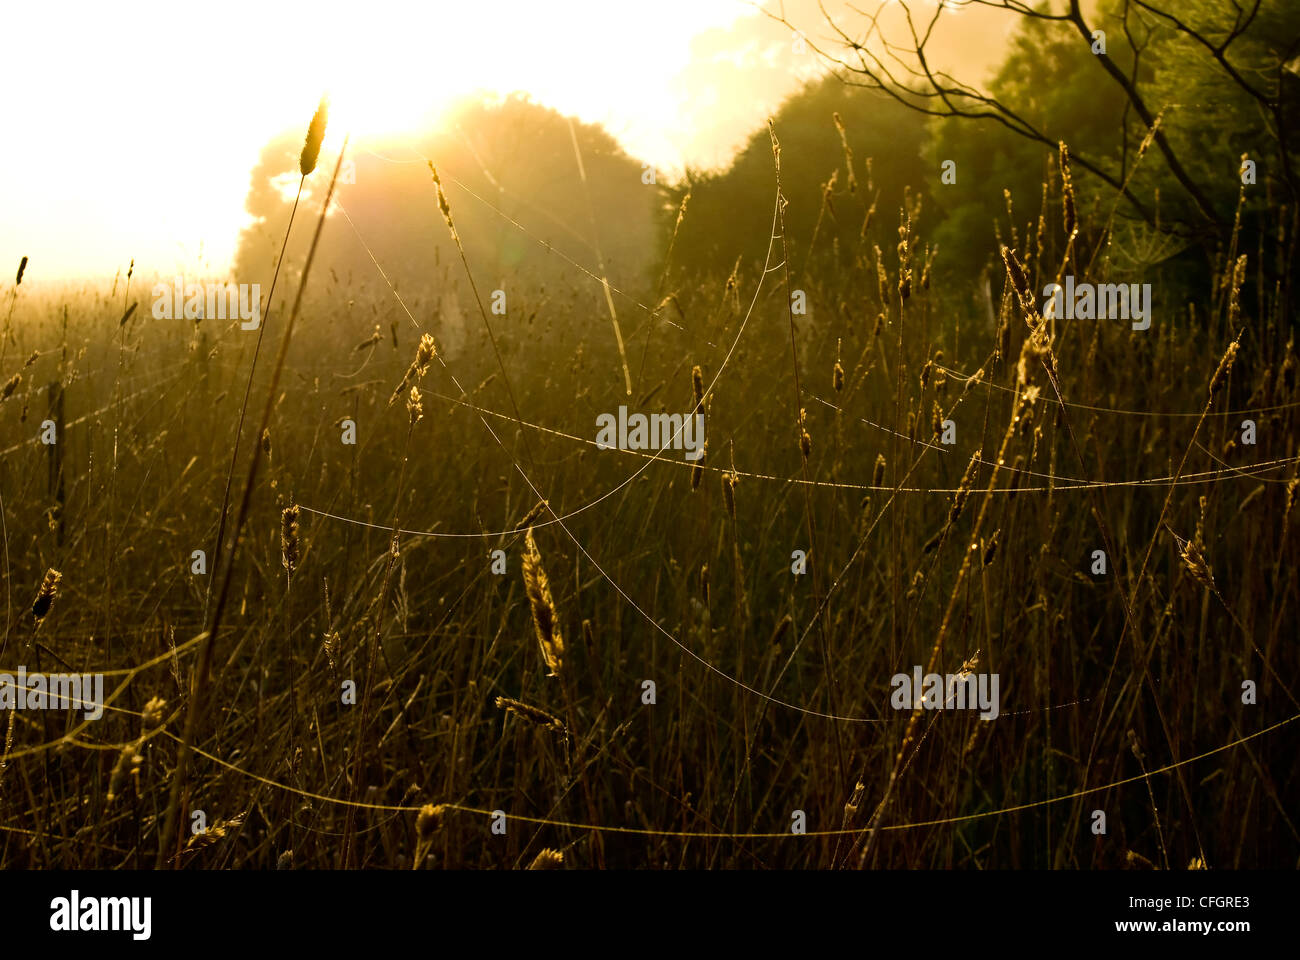 Verworrenen Spinnweben Strecken zwischen Stängel Gras in einem Dawn-Feld. Stockfoto